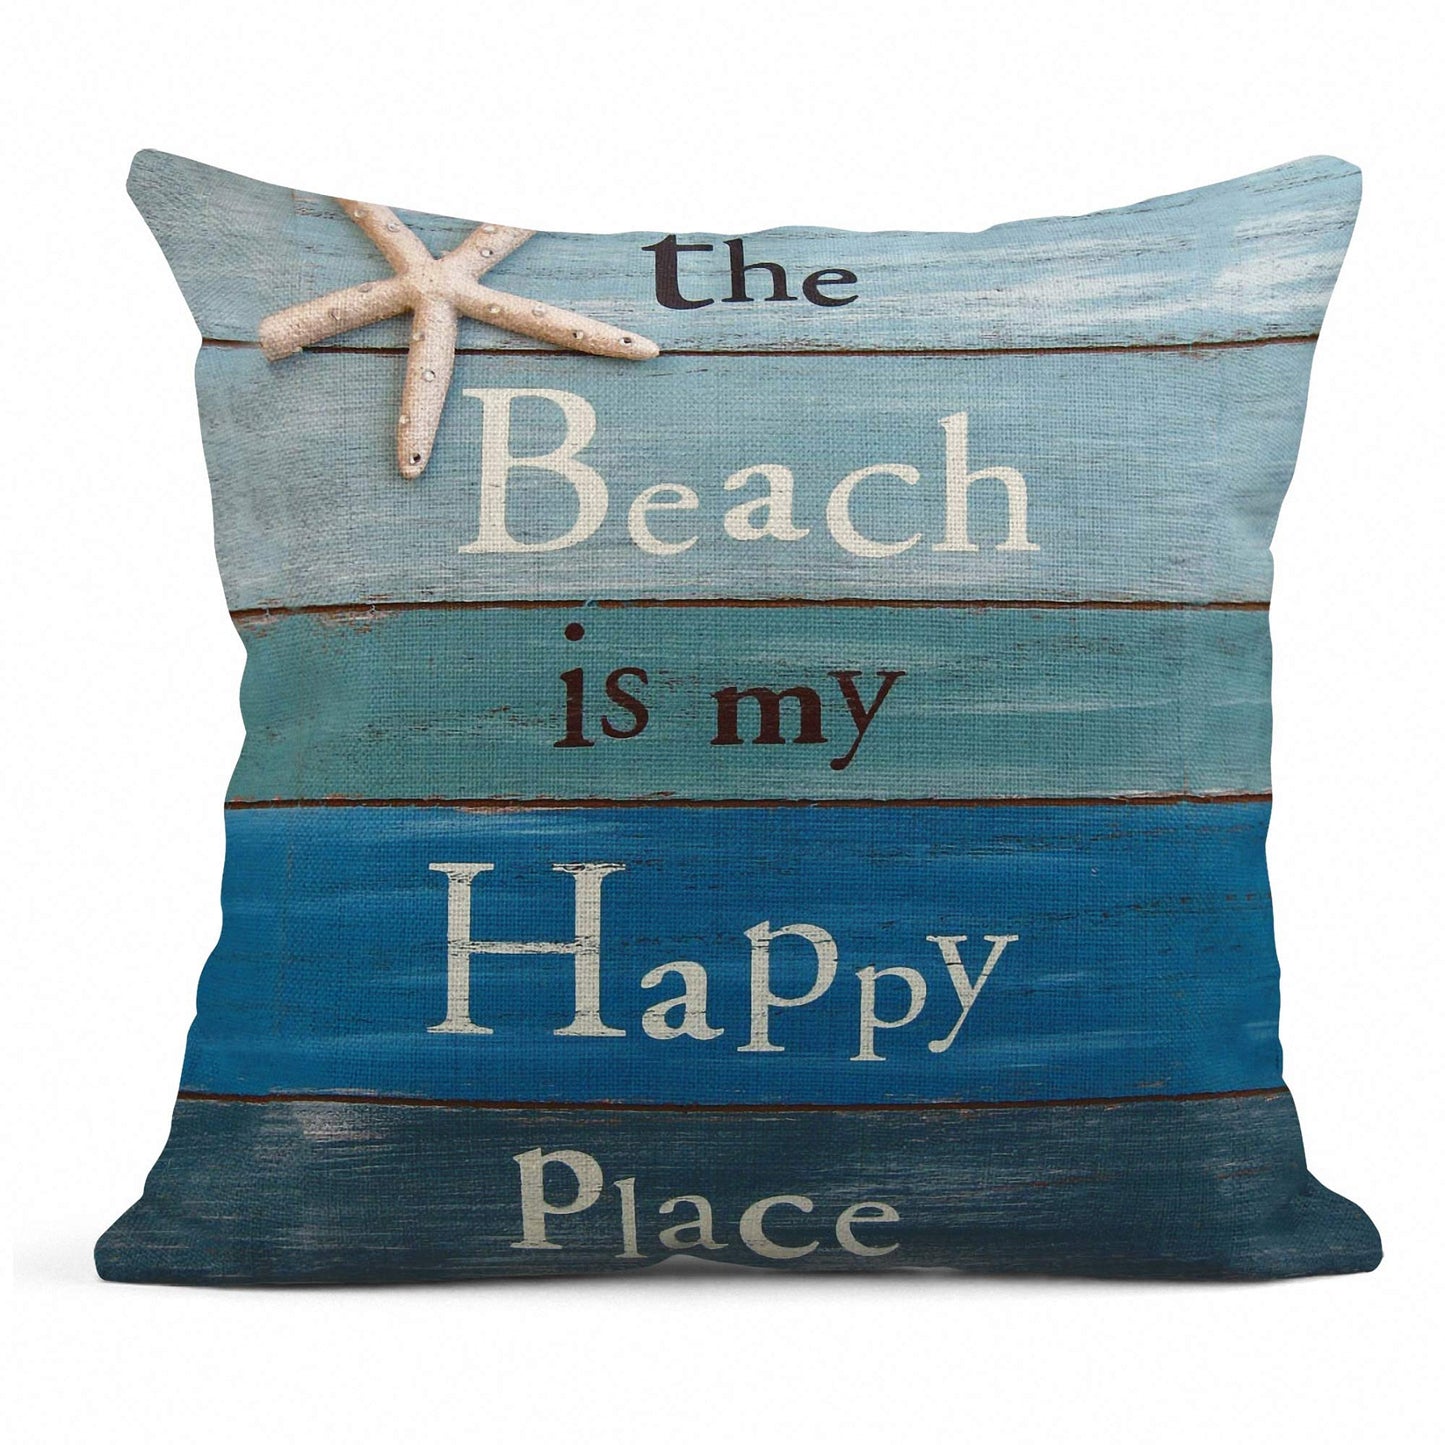 Sea / beach pillowcases